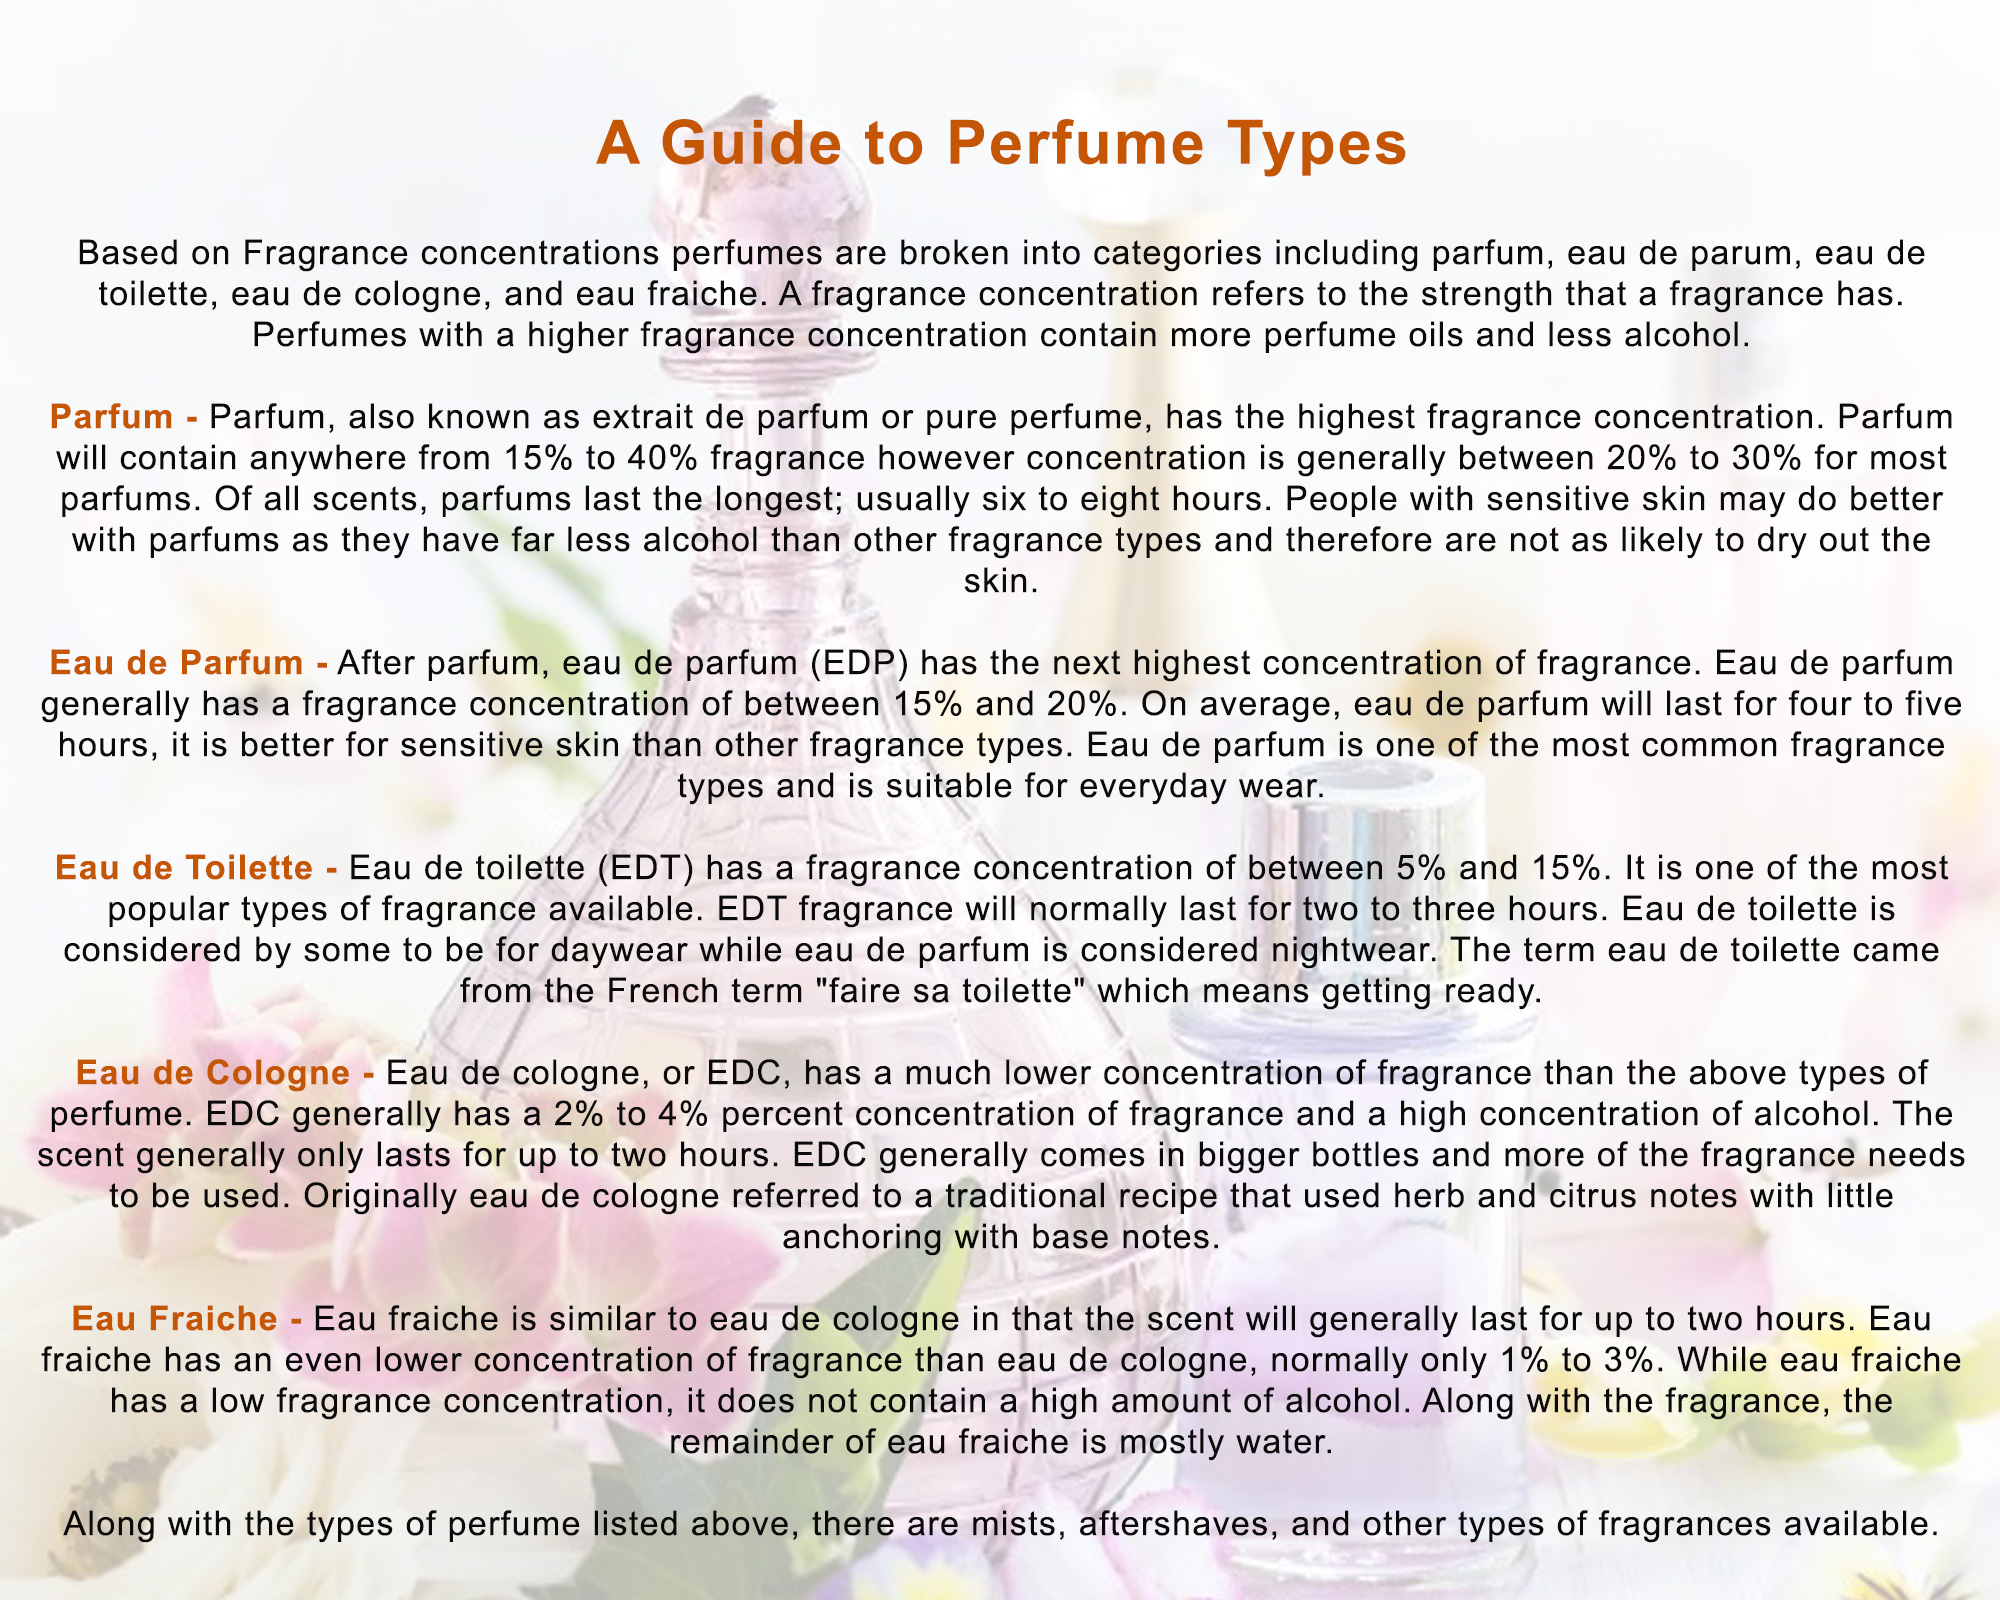 Louis Cardin Orchidea Homme 80ml - Eau De Parfum – Louis Cardin - Exclusive  Designer Perfumes